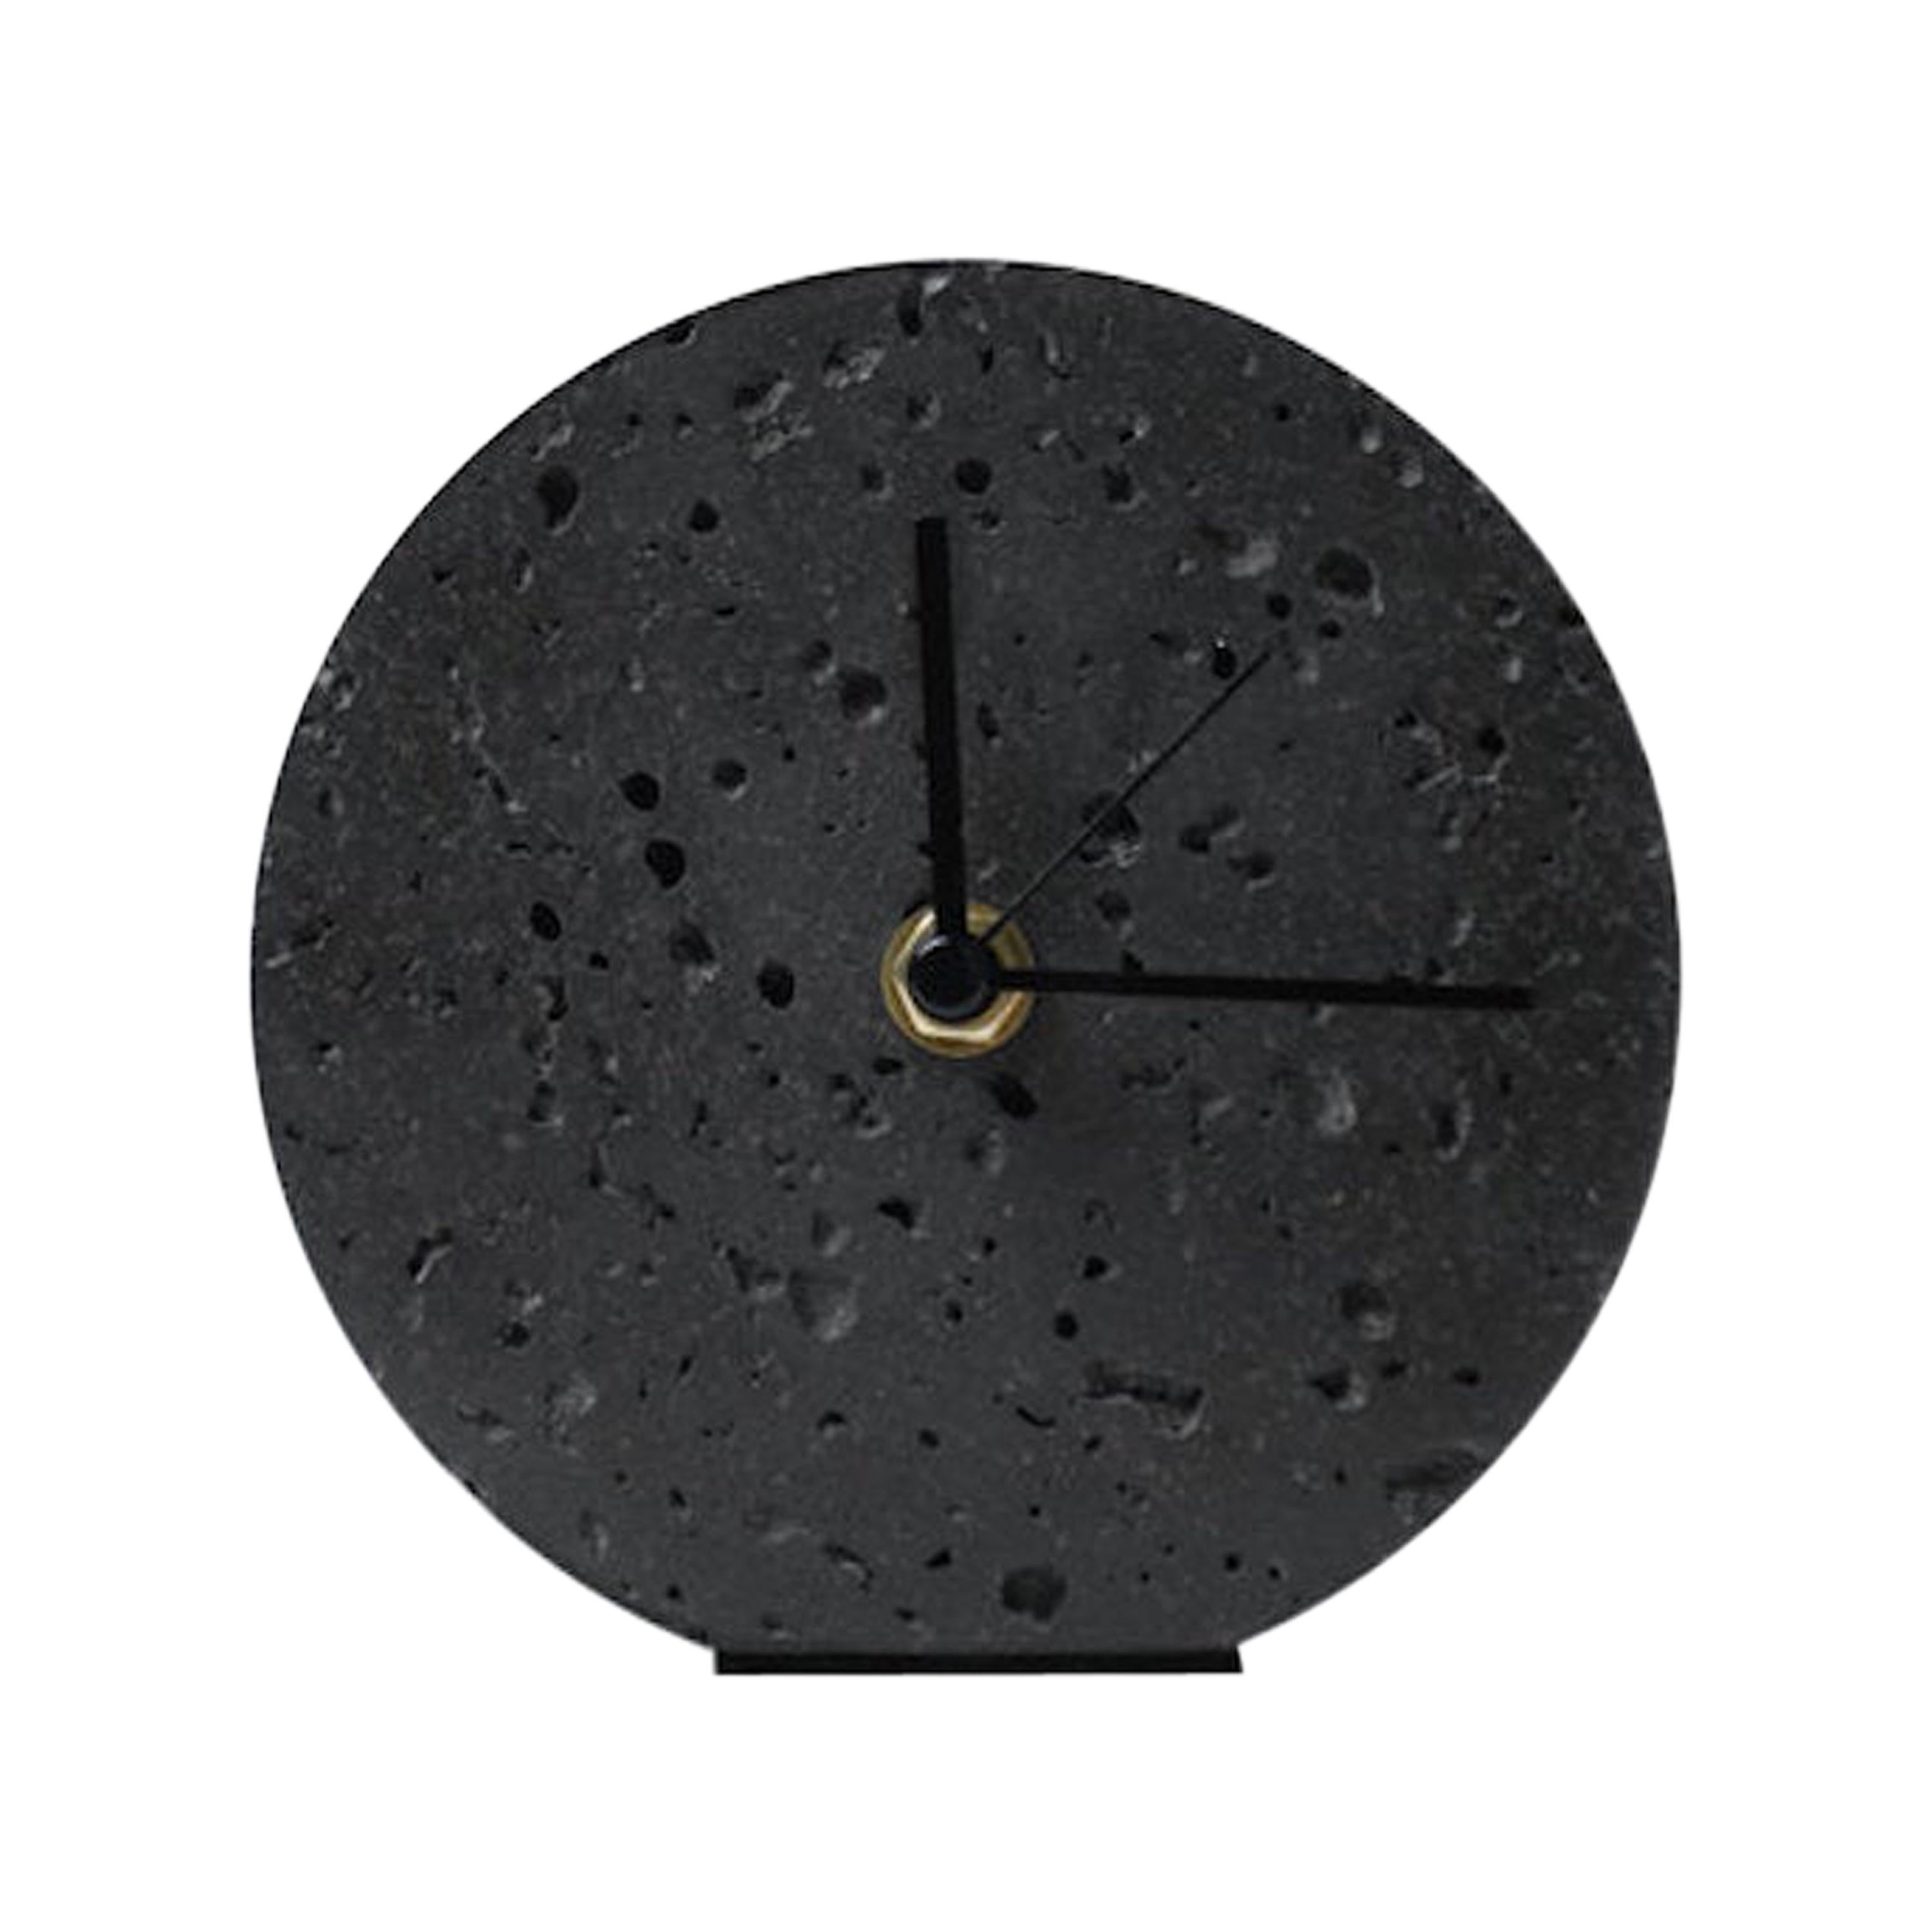 Contemporary Table Clock 'Moment' in Black Lava Stone